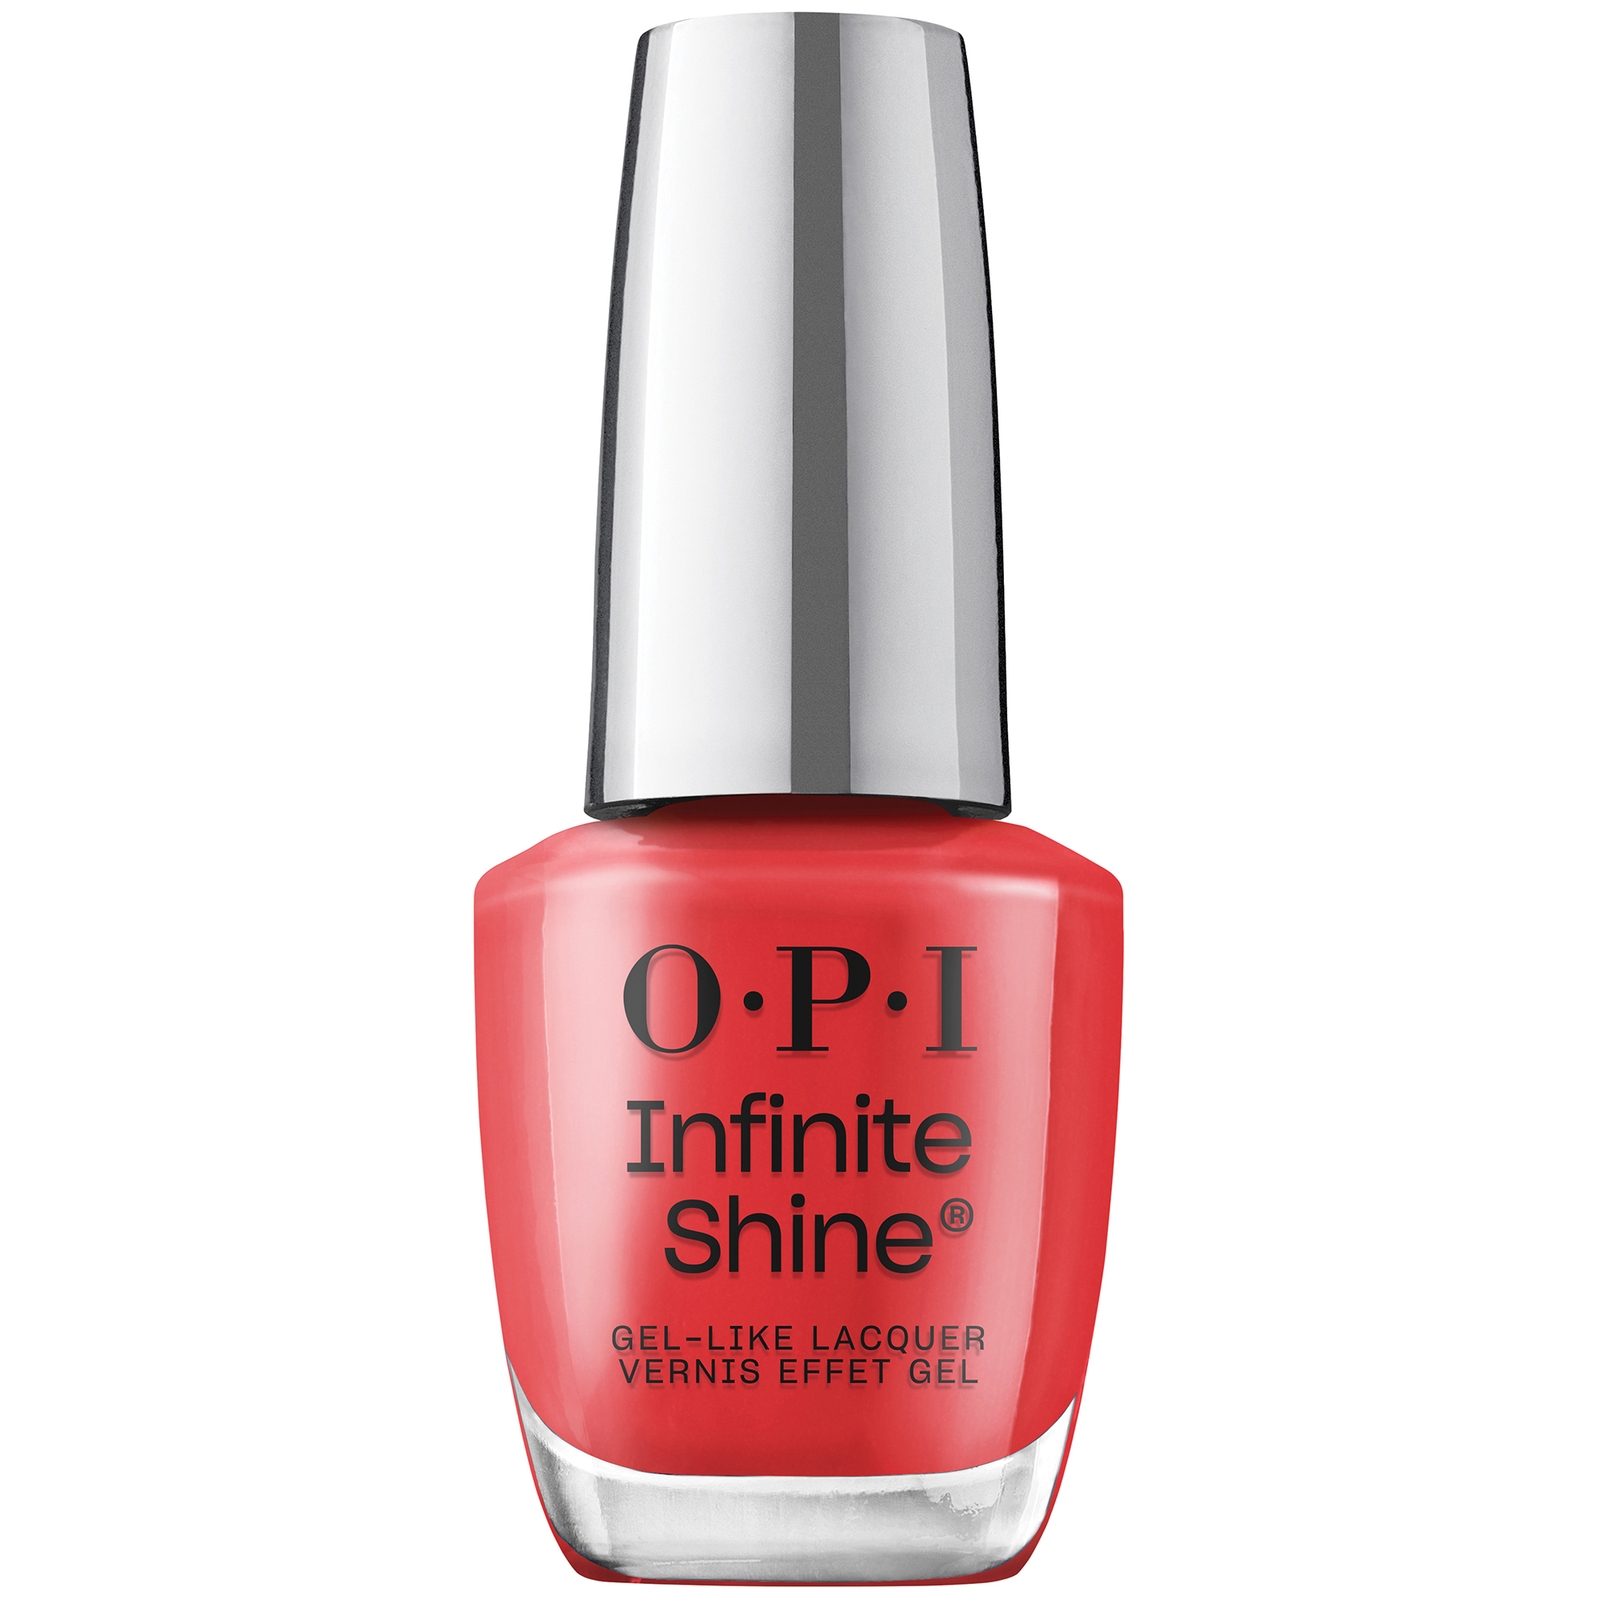 Opi Infinite Shine Long-wear Nail Polish - Cajun Shrimp 15ml